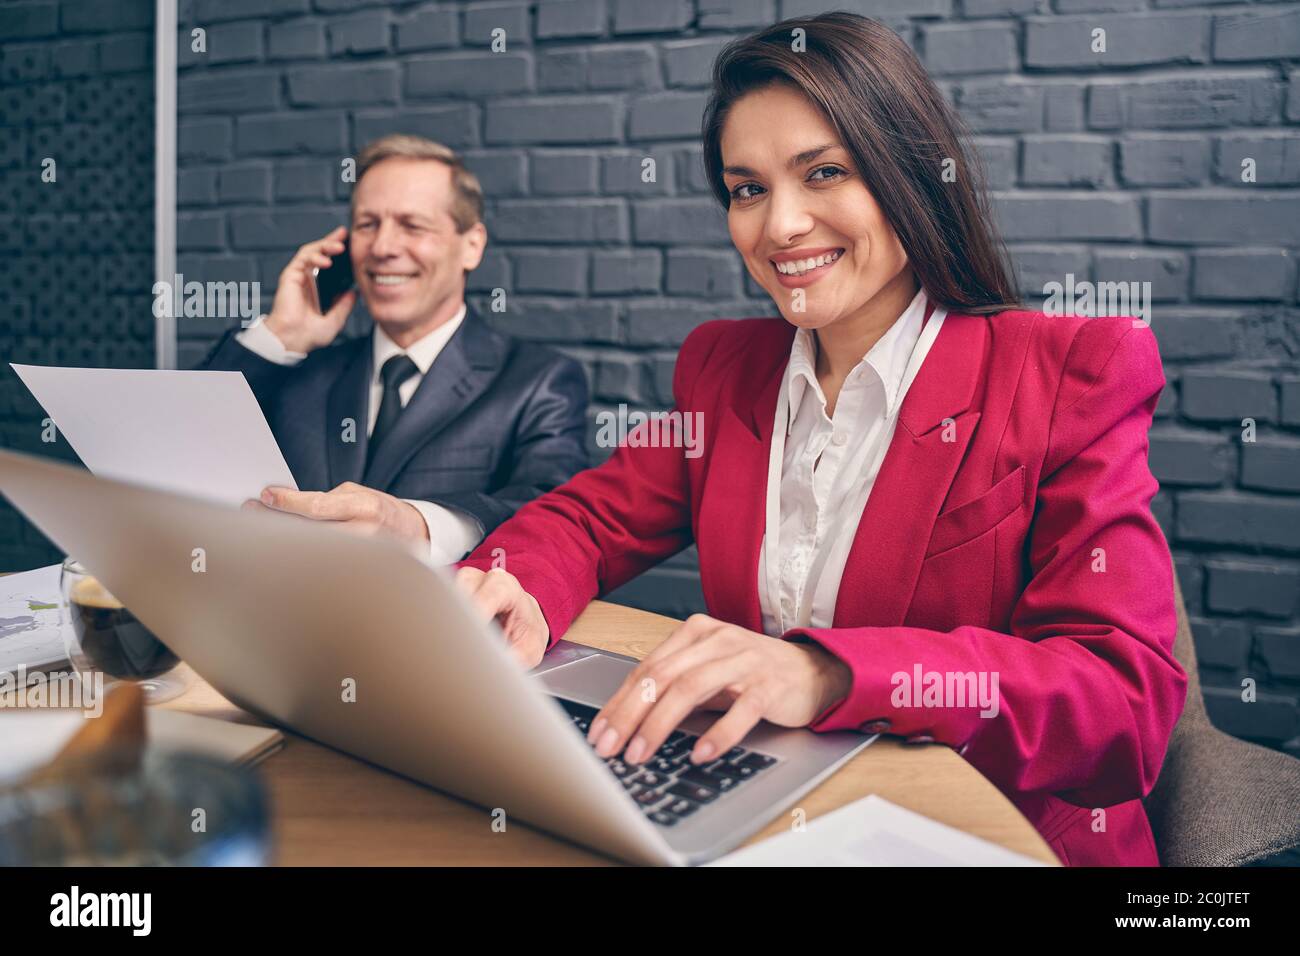 Attraktive junge Managerin, die ihre Finger auf der Tastatur hält Stockfoto